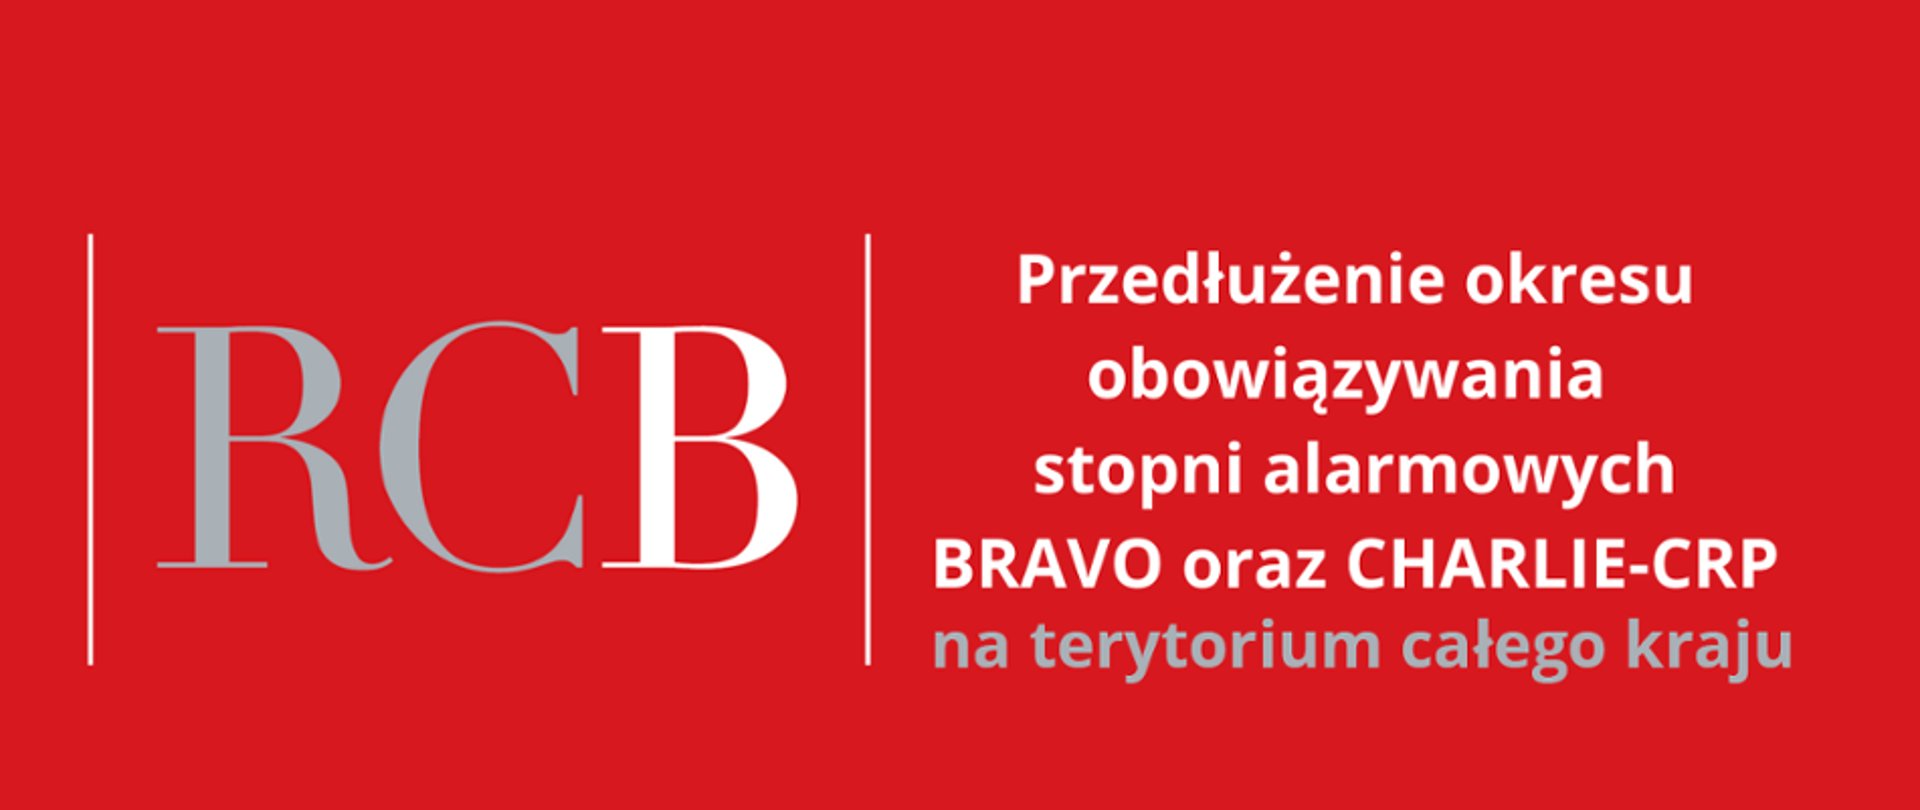 Grafika, na czerwonym tekst przeważająco w kolorze białym, informujący o przedłużeniu okresu obowiązywania stopni alarmowych BRAVO oraz CHARLIE-CRP na terytorium całego kraju.